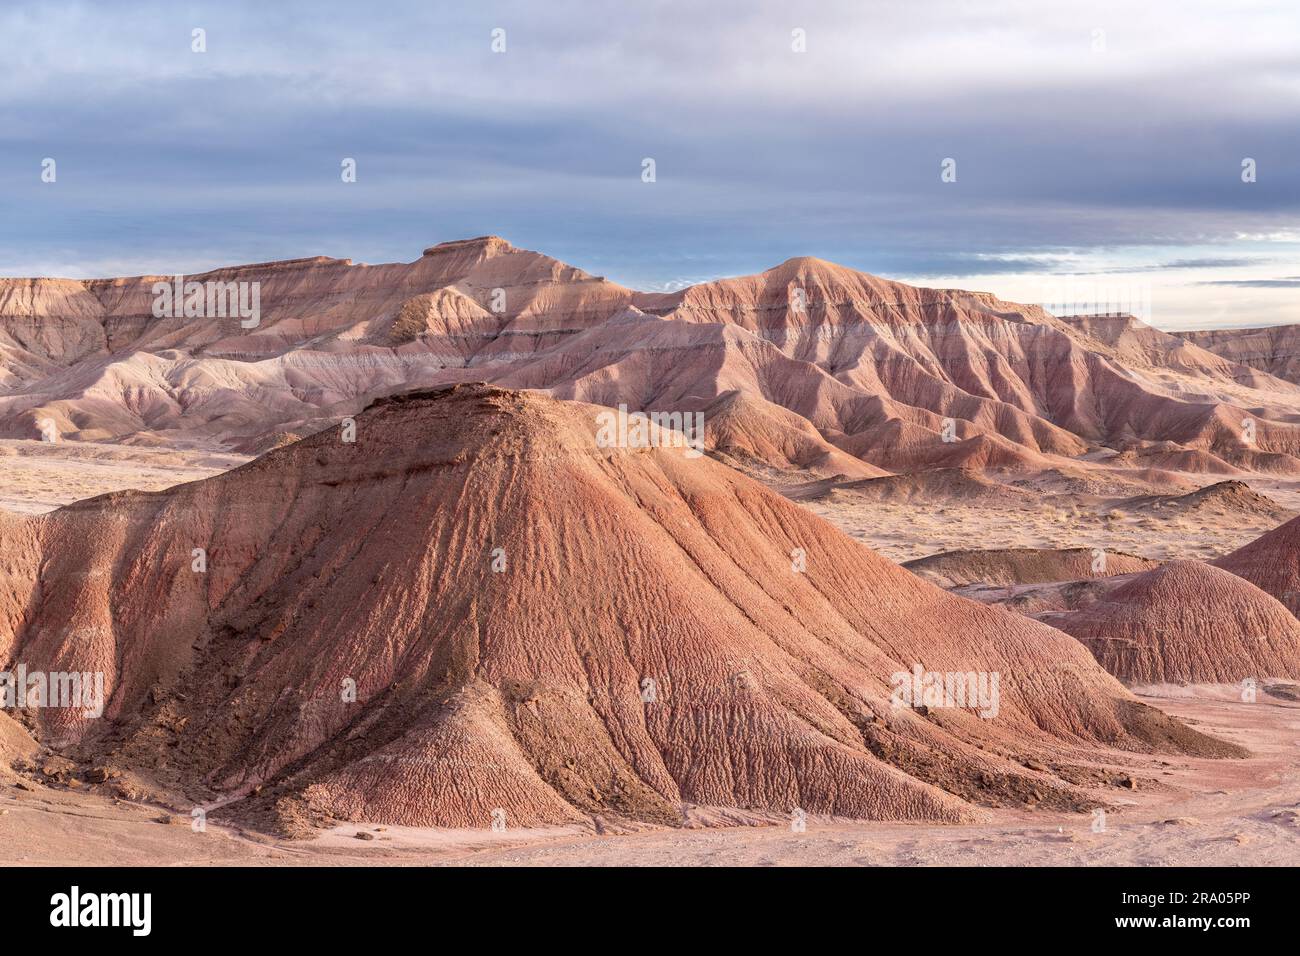 Caractéristiques érosionnelles, mesas, collines et paysage désertique, le désert peint, près de tuba City, AZ, USA, Par Dominique Braud/Dembinsky photo Assoc Banque D'Images